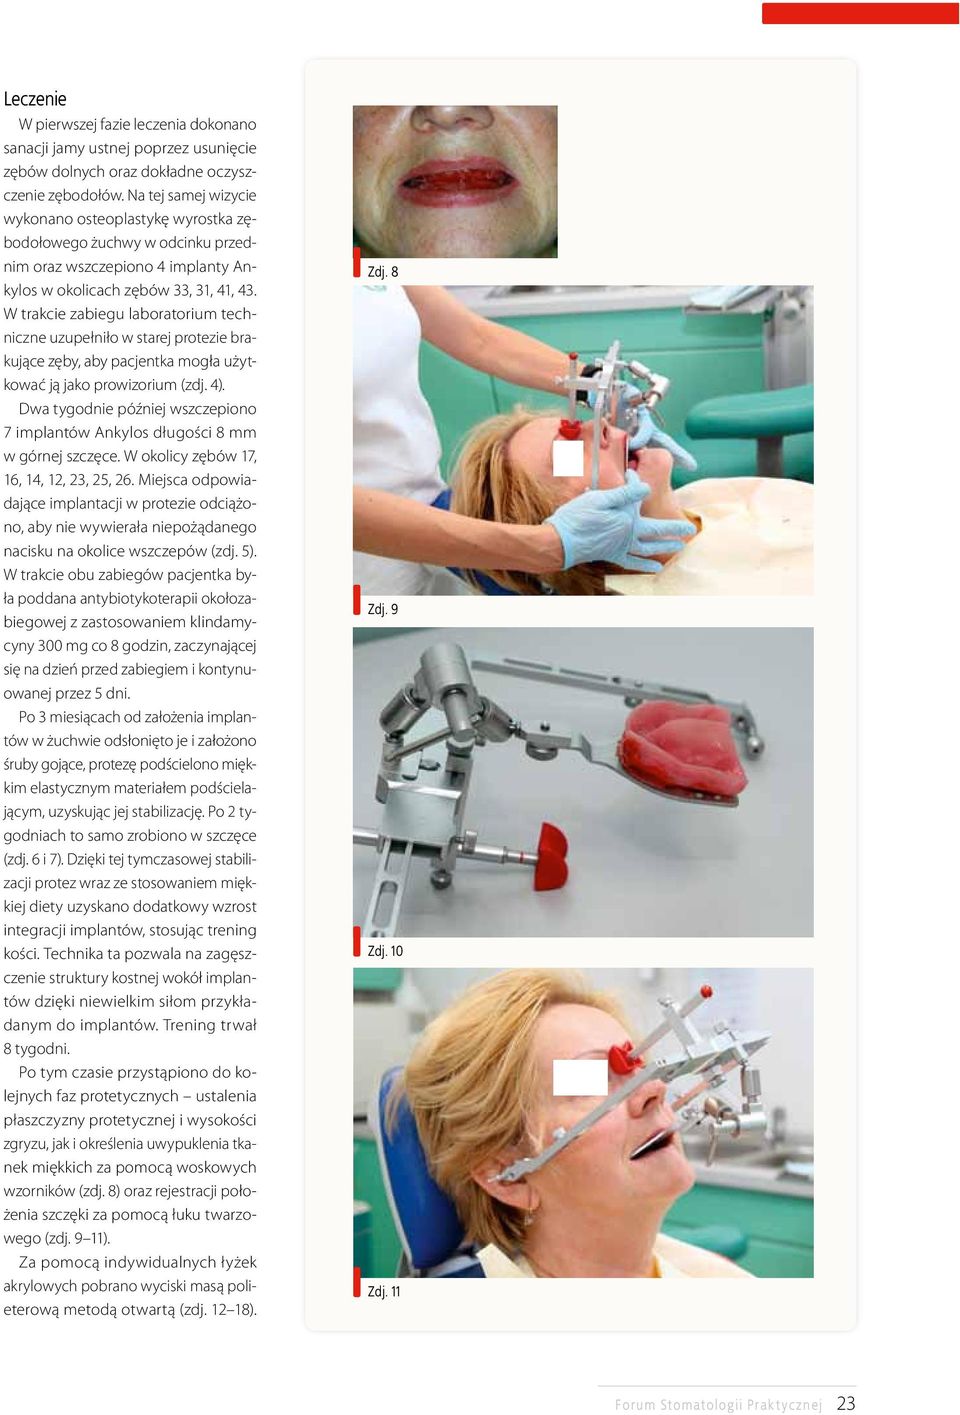 W trakcie zabiegu laboratorium techniczne uzupełniło w starej protezie brakujące zęby, aby pacjentka mogła użytkować ją jako prowizorium (zdj. 4).